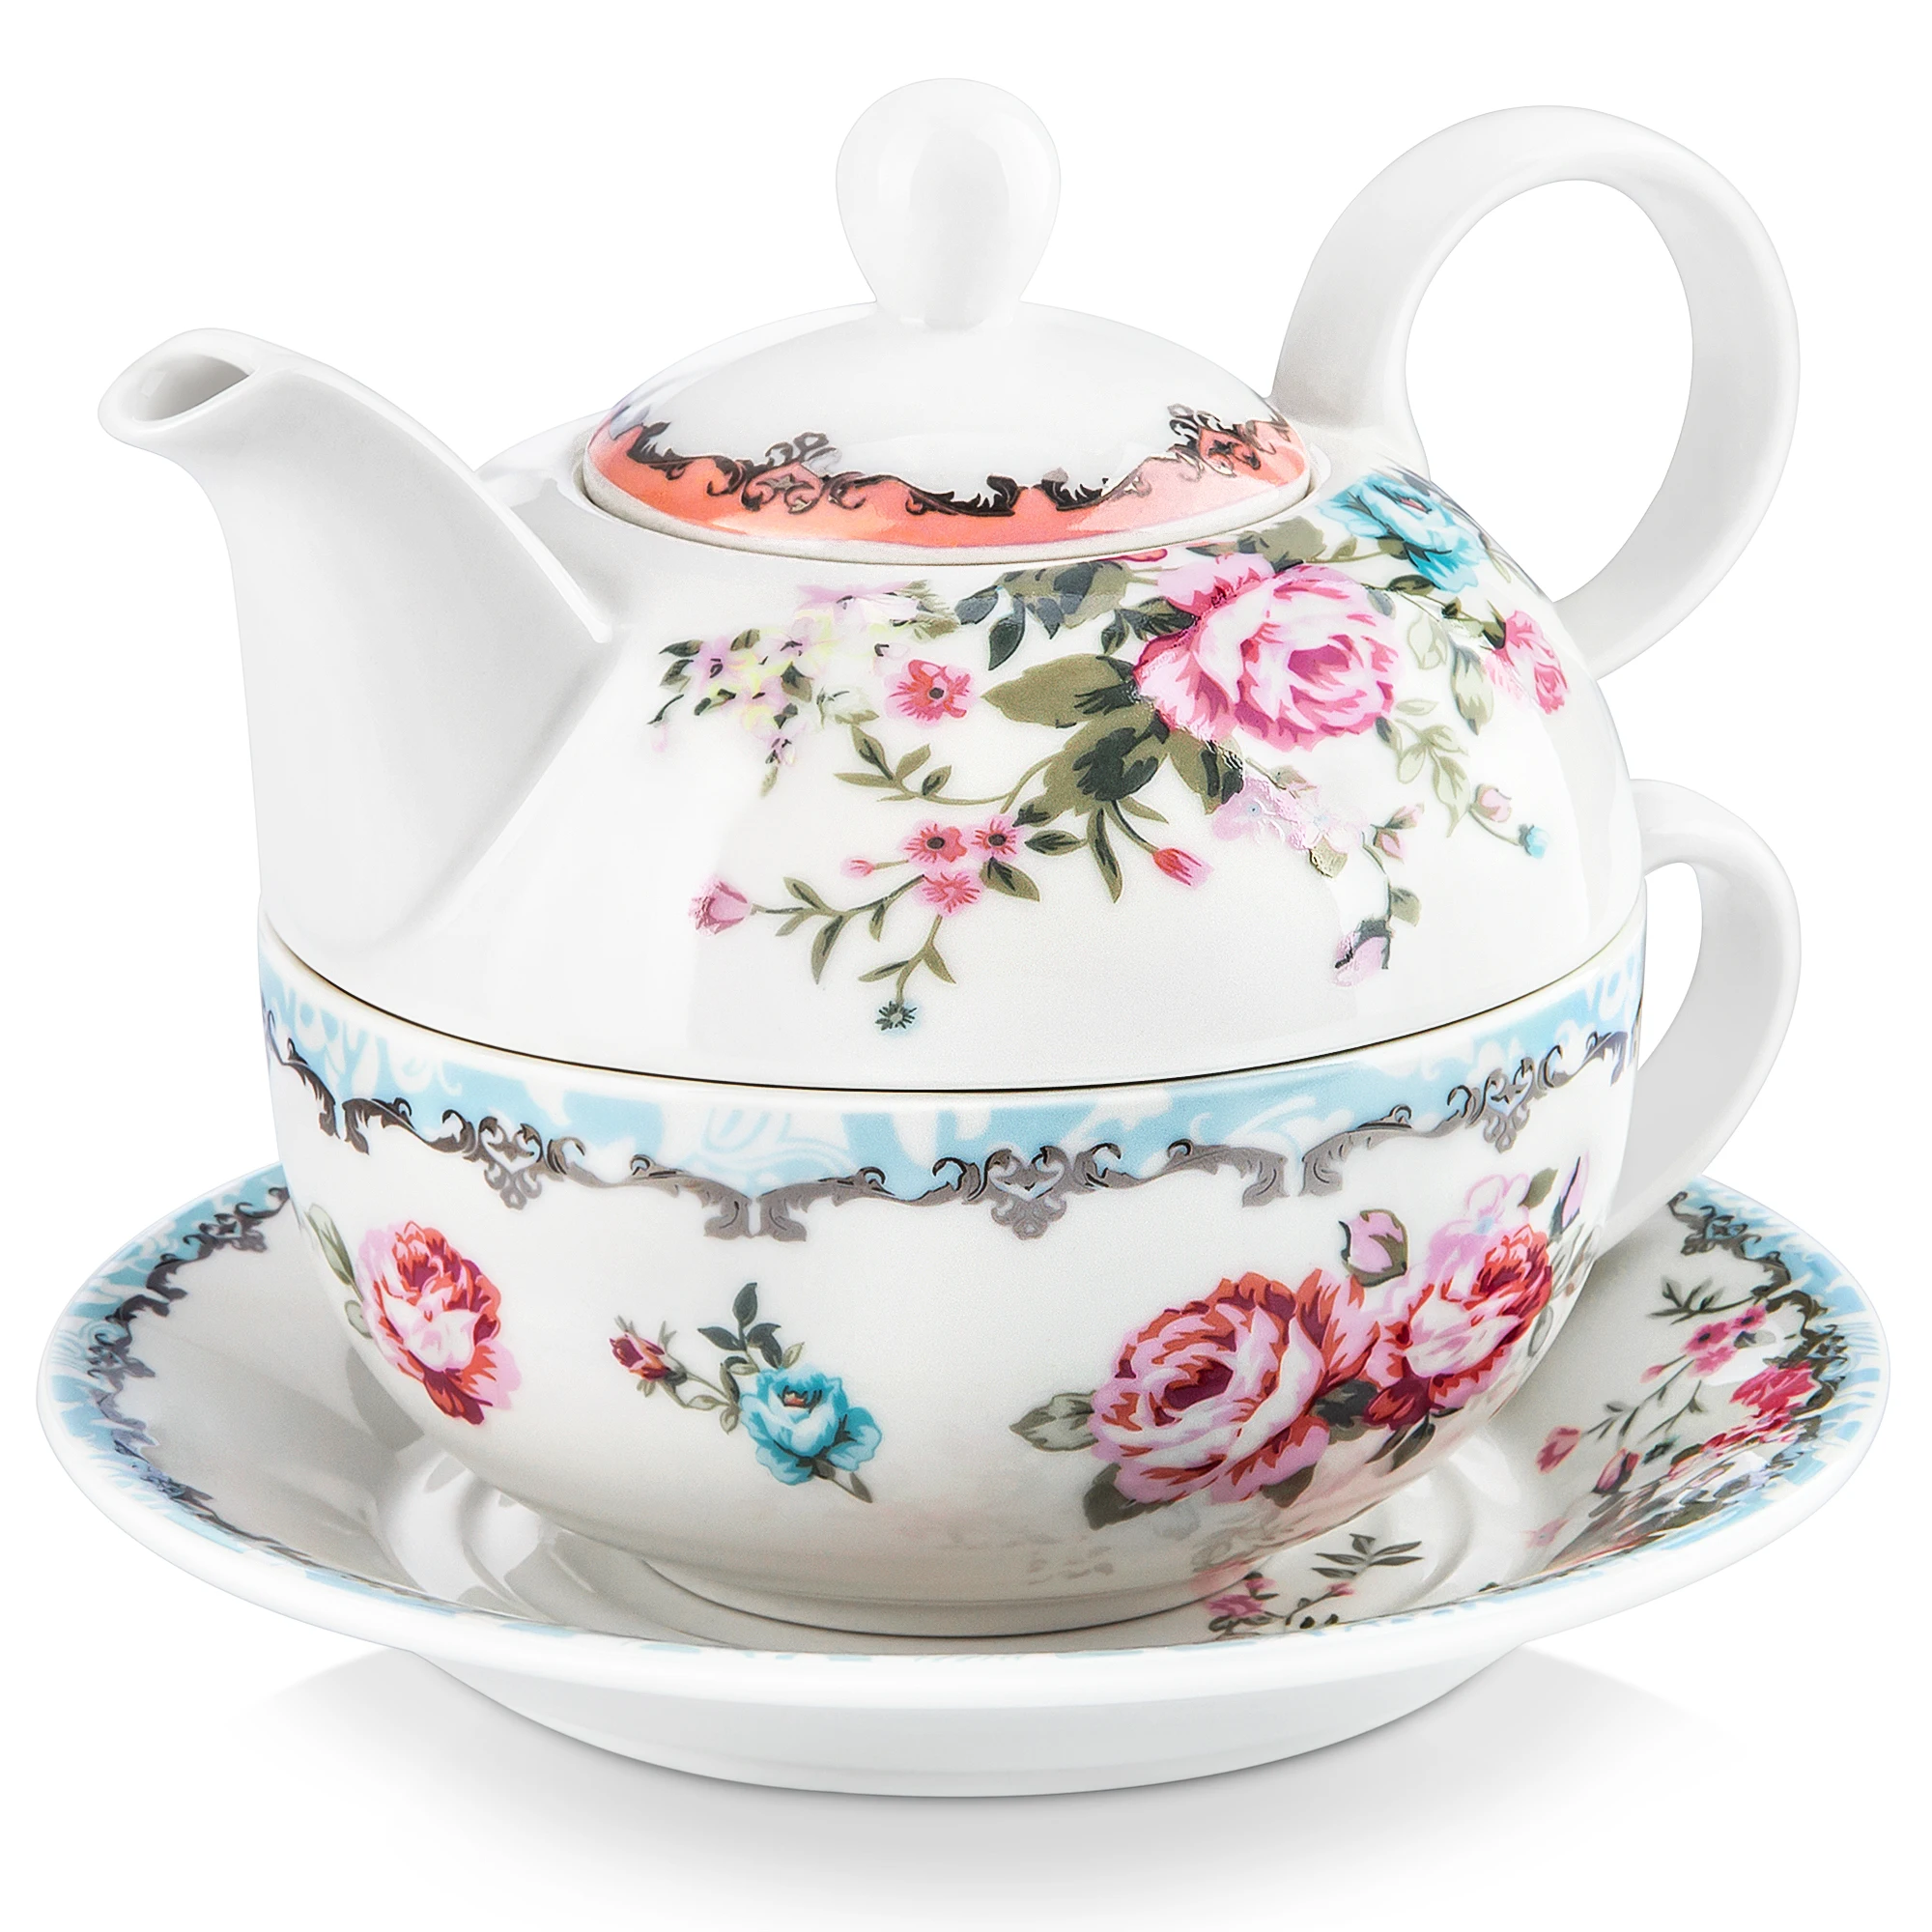 MALACASA серия Sweet.time 4-Piece цветочный чай для одного набора кремовый белый фарфор